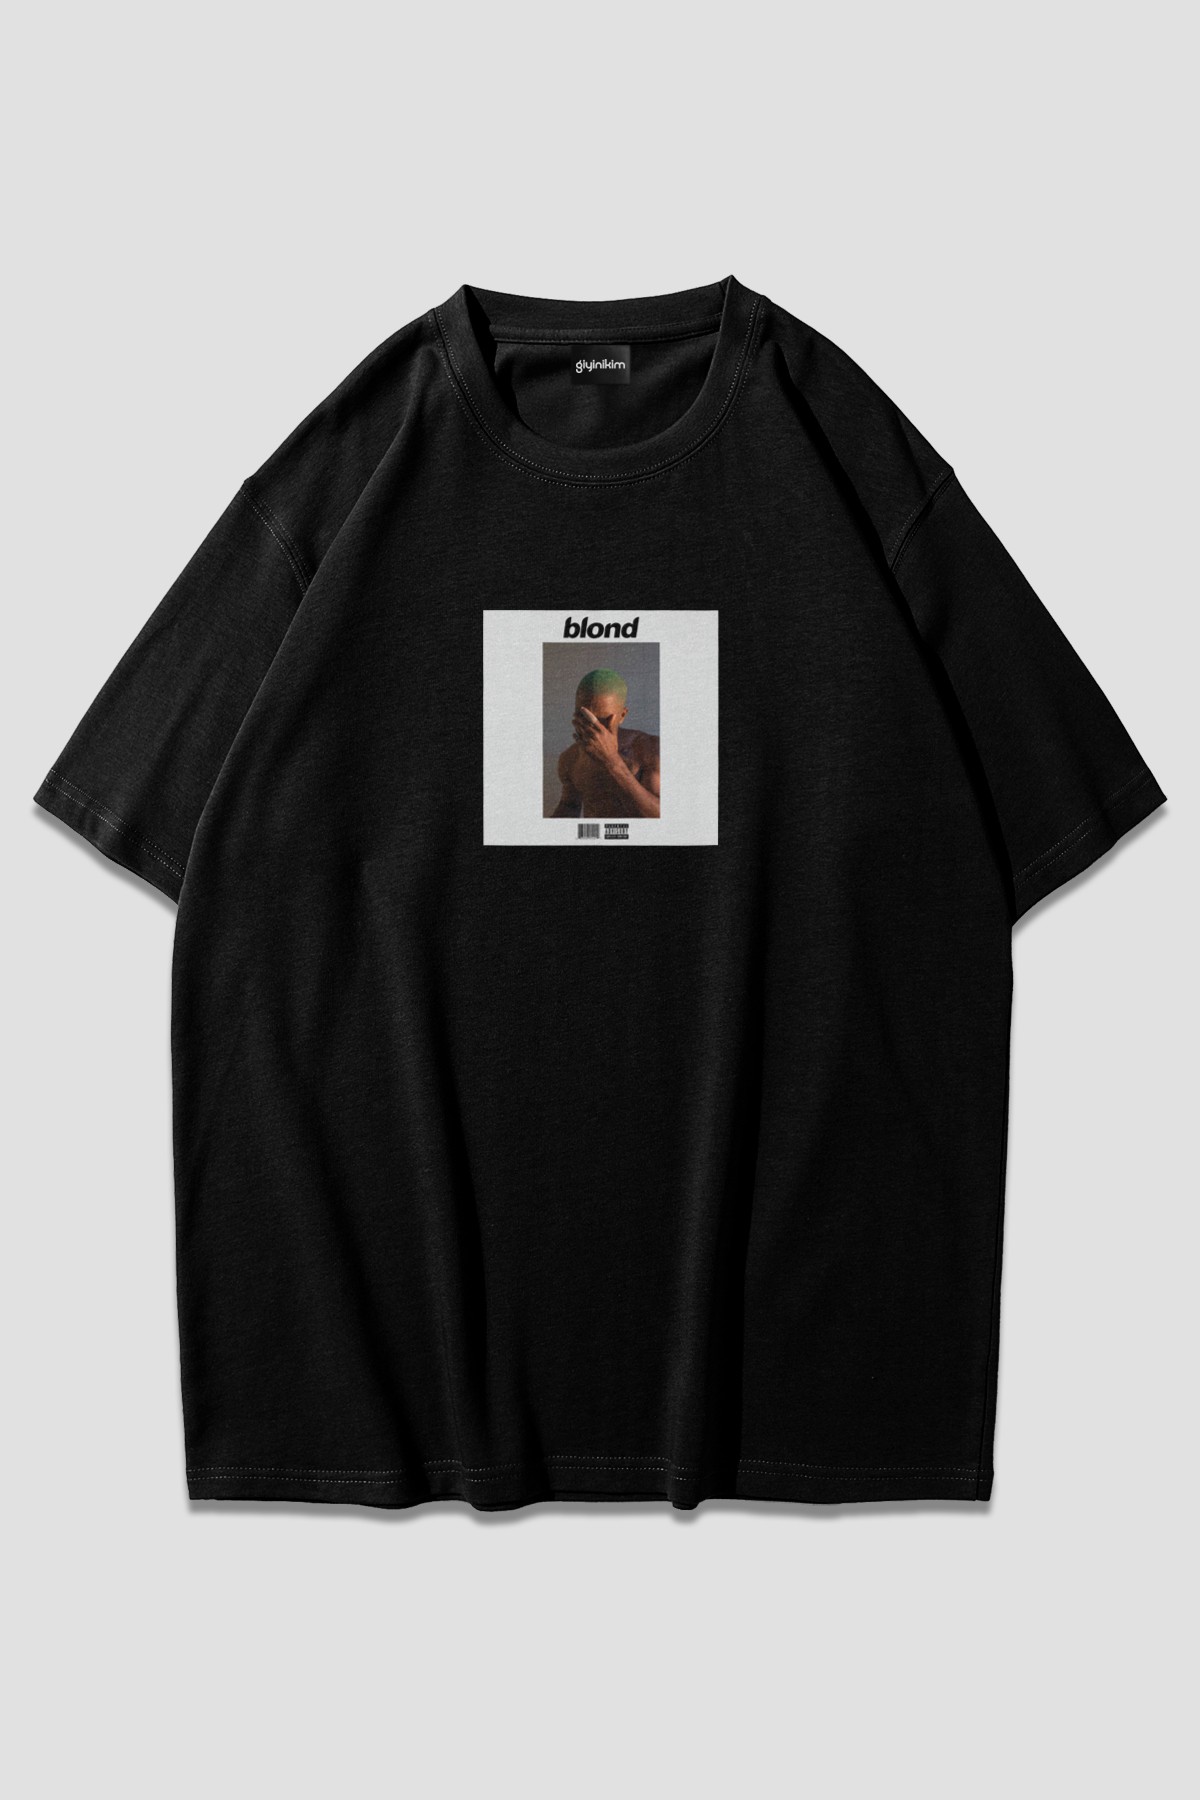 Frank Ocean Blond Siyah Oversize T-shirt